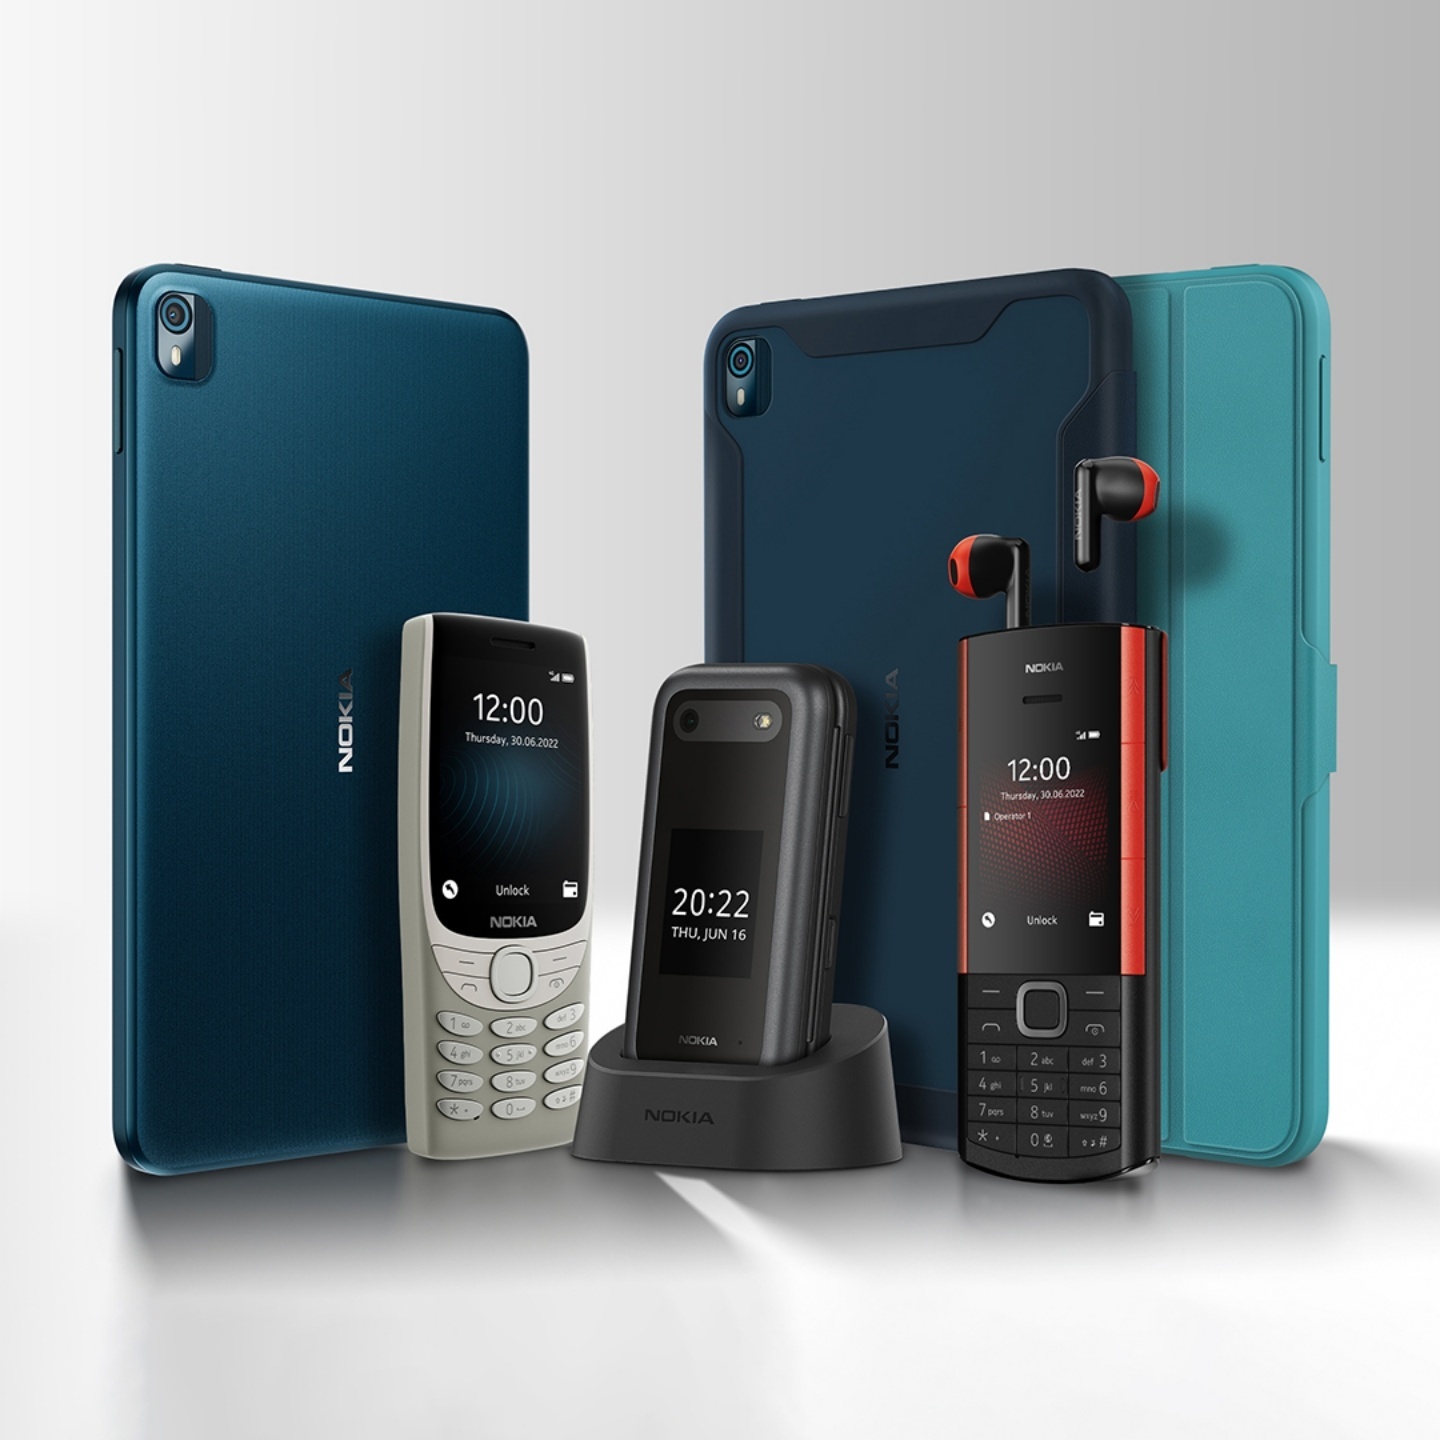 Nokia 未來有可能不再推出智慧型手機了？外媒從兩點看出一些端倪